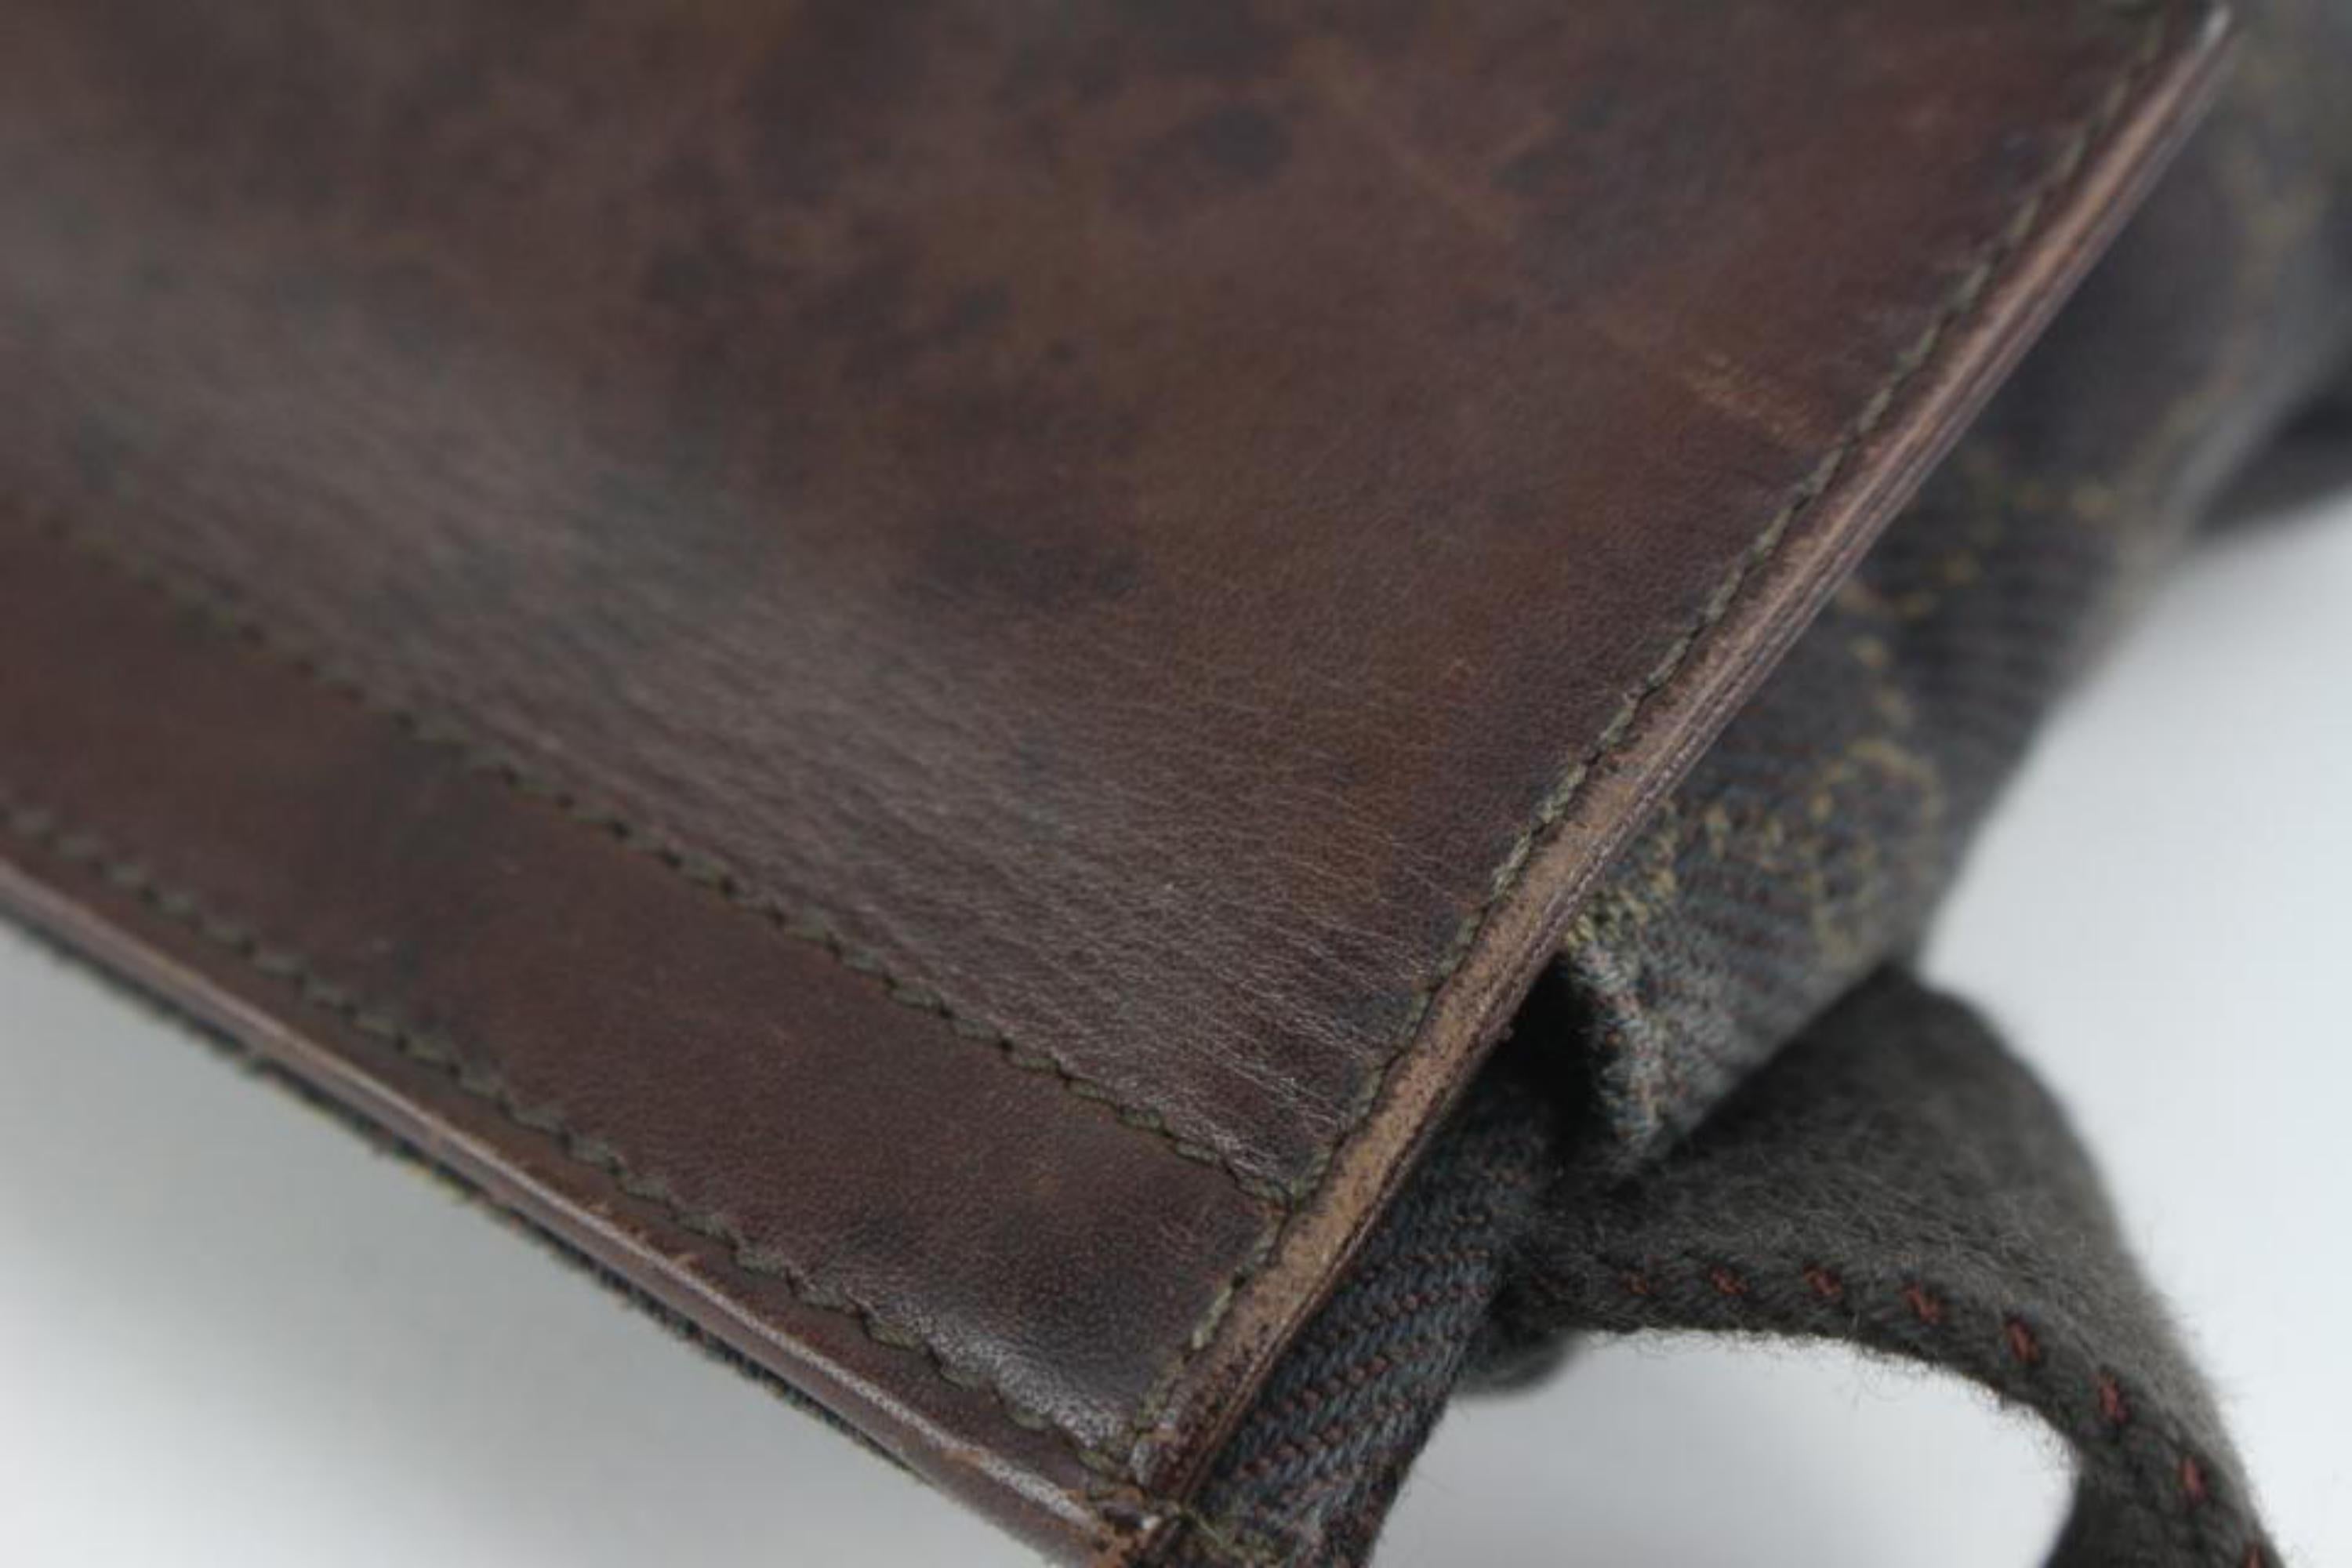 Noir Gucci - Sac ceinture Monogram GG marron foncé emballé dans la taille 123g32 en vente